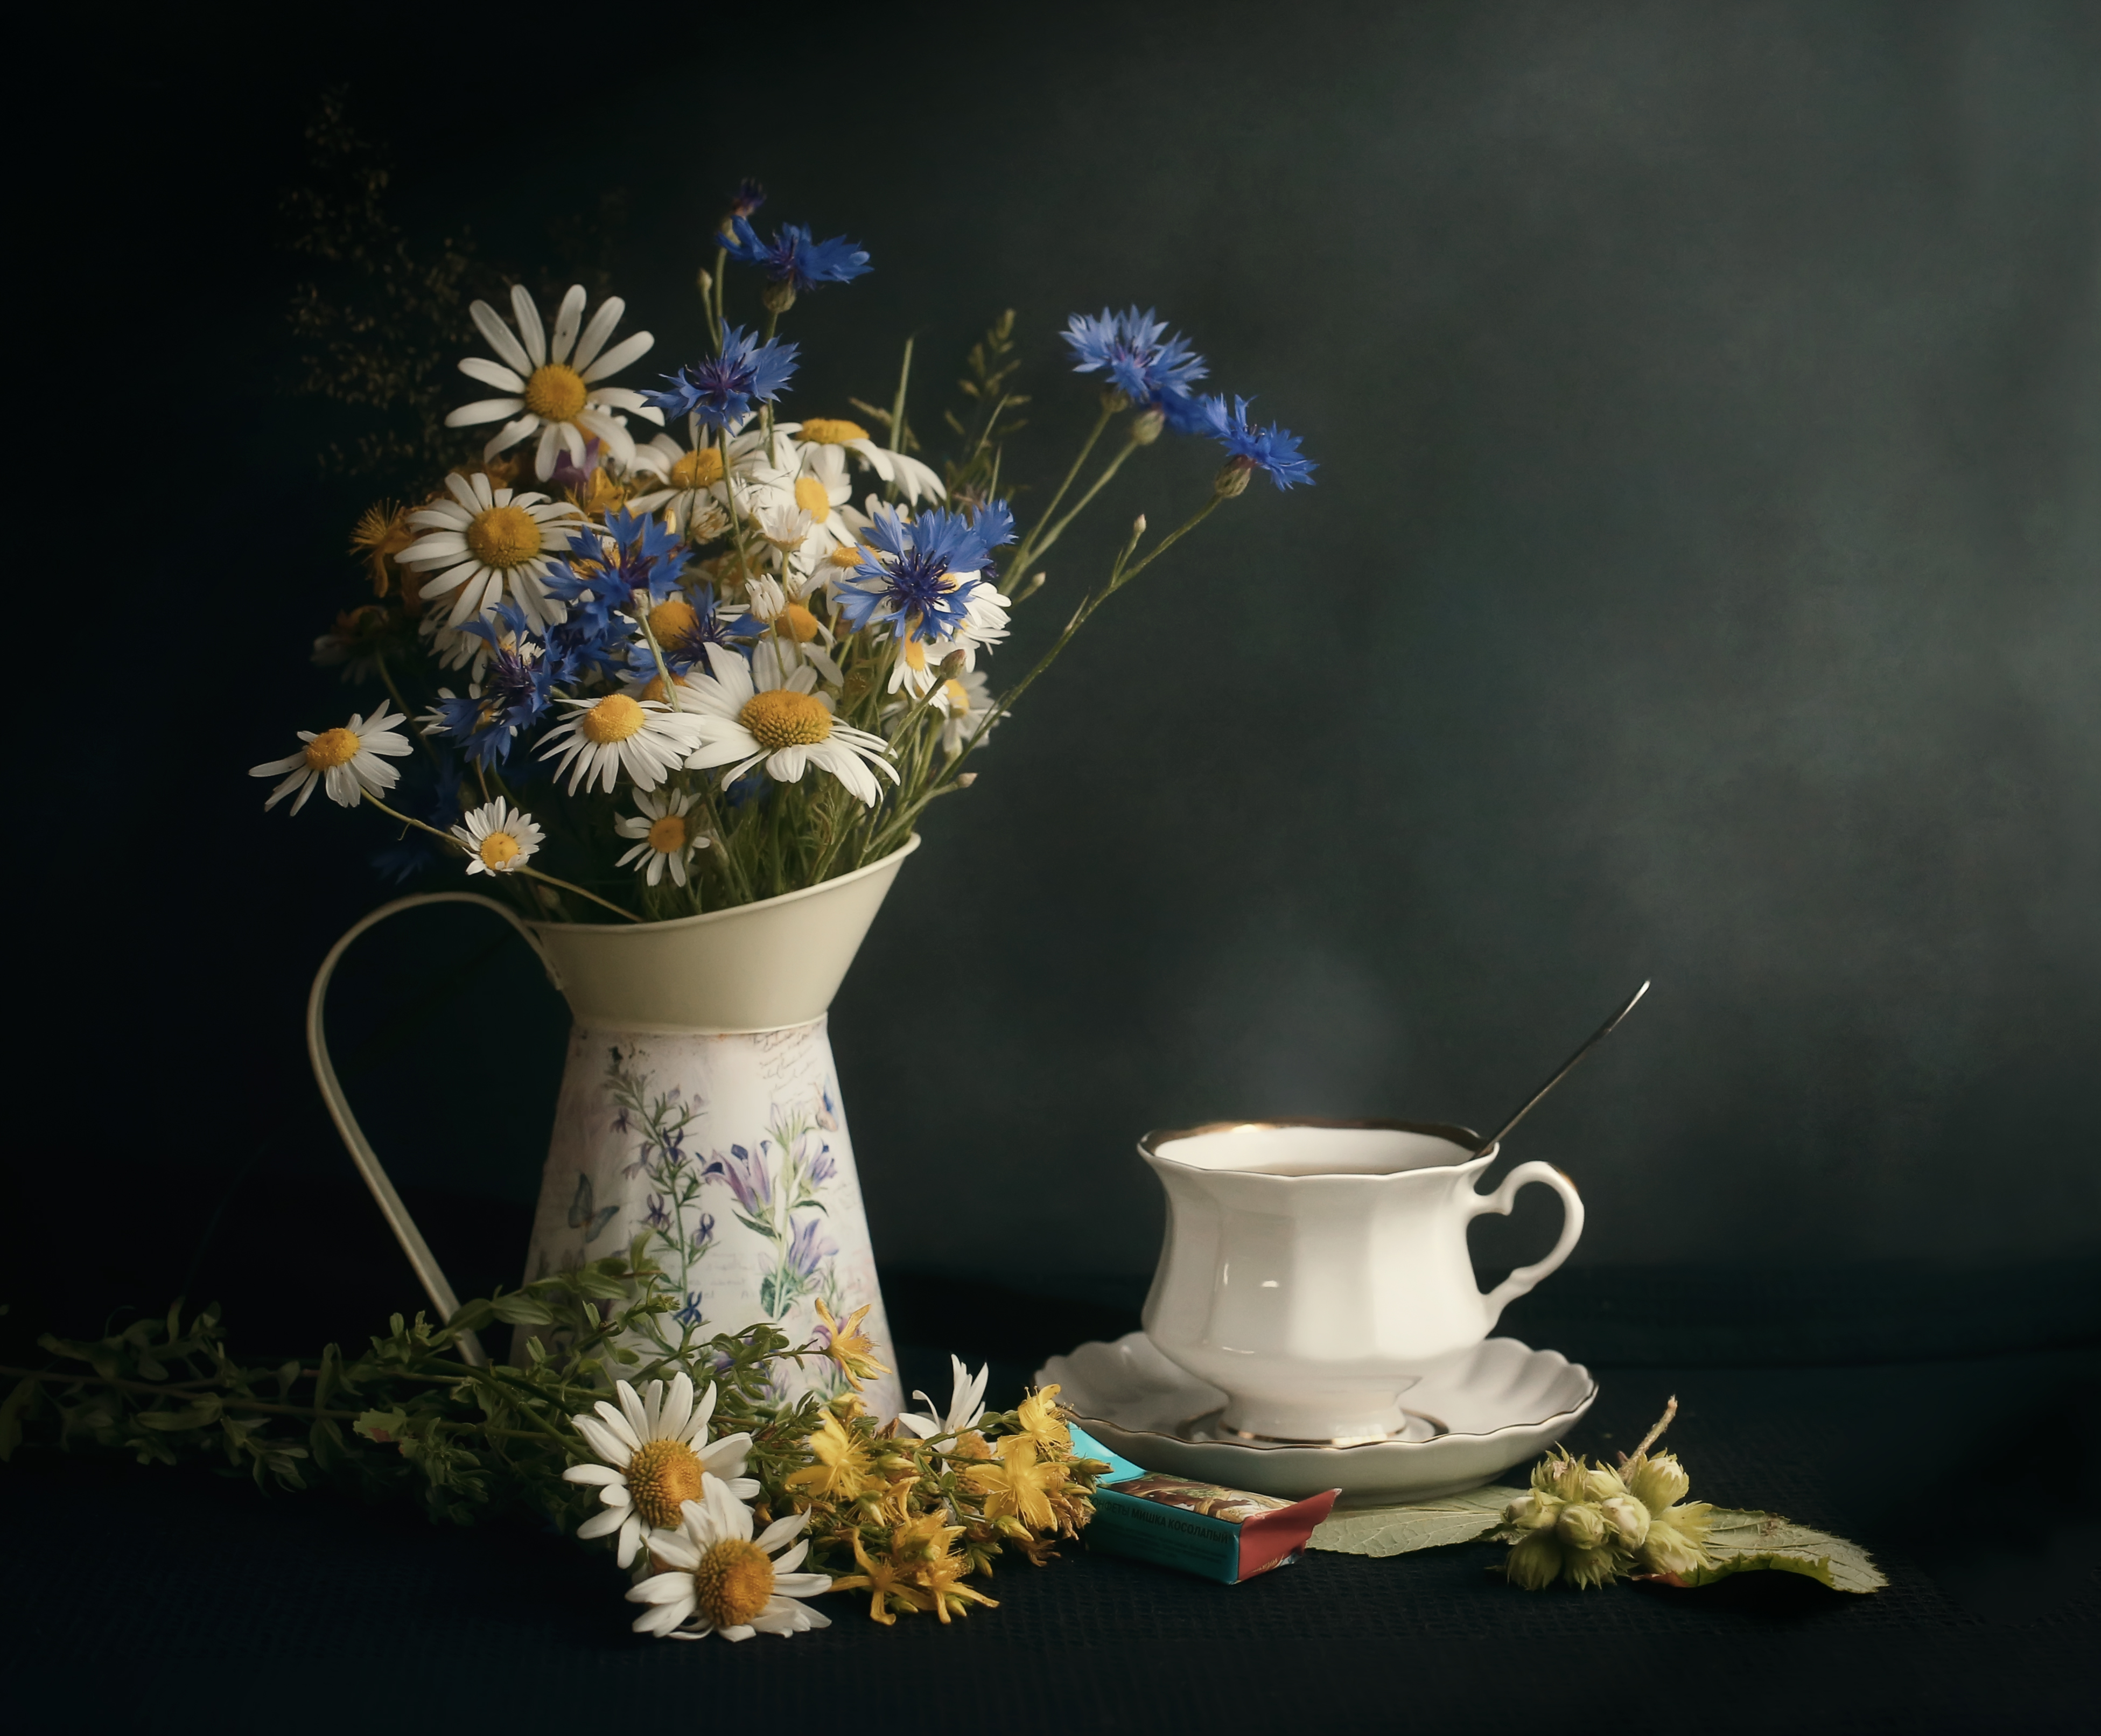 чайная, тема, чай, утро, цветы на столе, деревенский, полевые цветы, букет, ваза, графин, Стасов Виталий